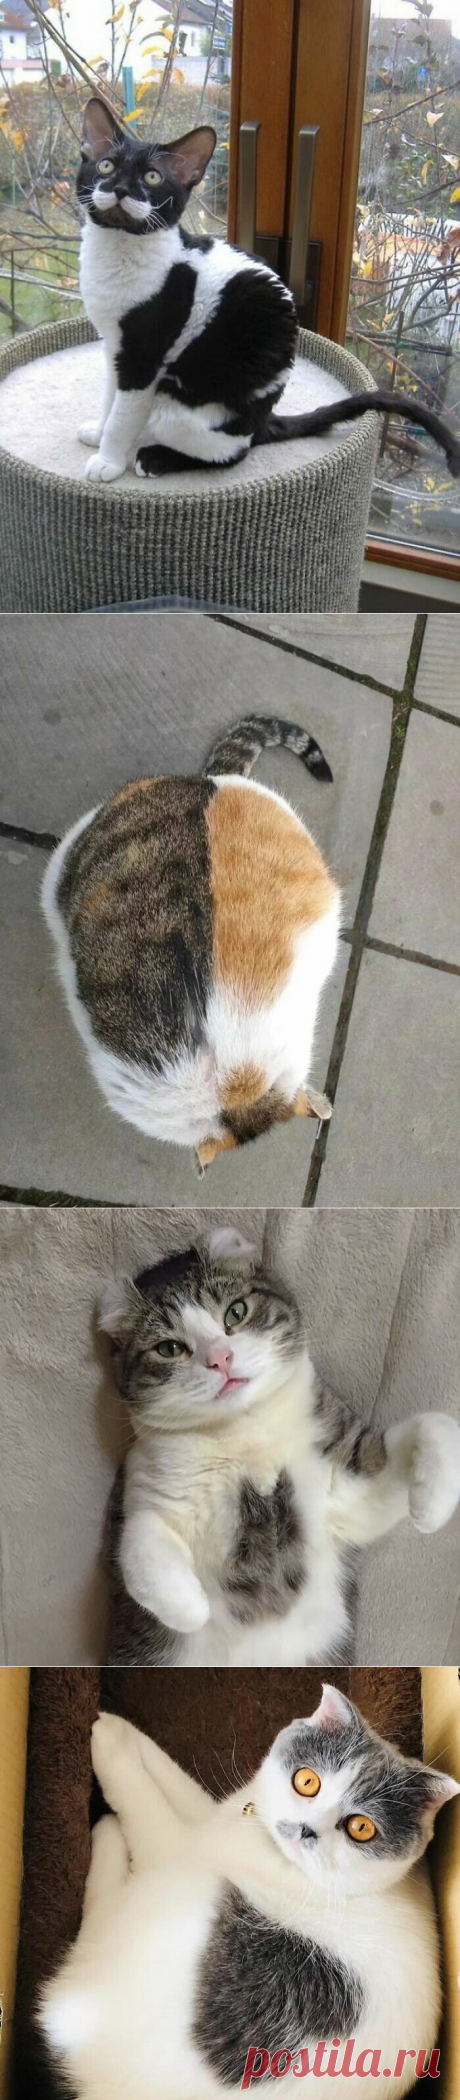 Кошки с уникальным окрасом шерсти